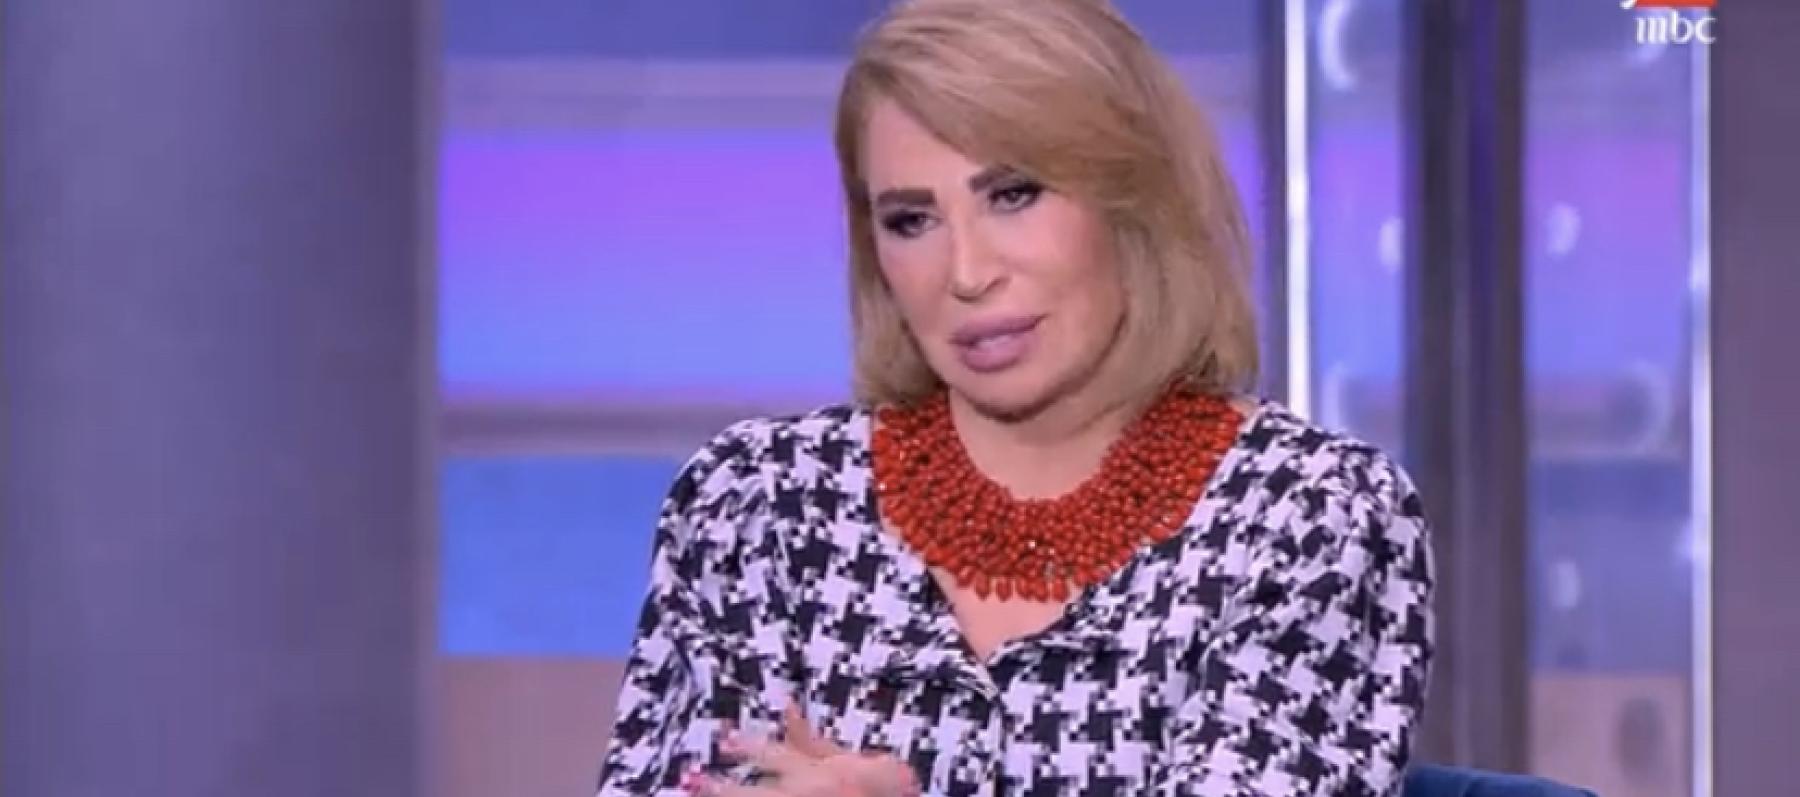 ايناس الدغيدي - الصورة من الحلقة MBC مصر